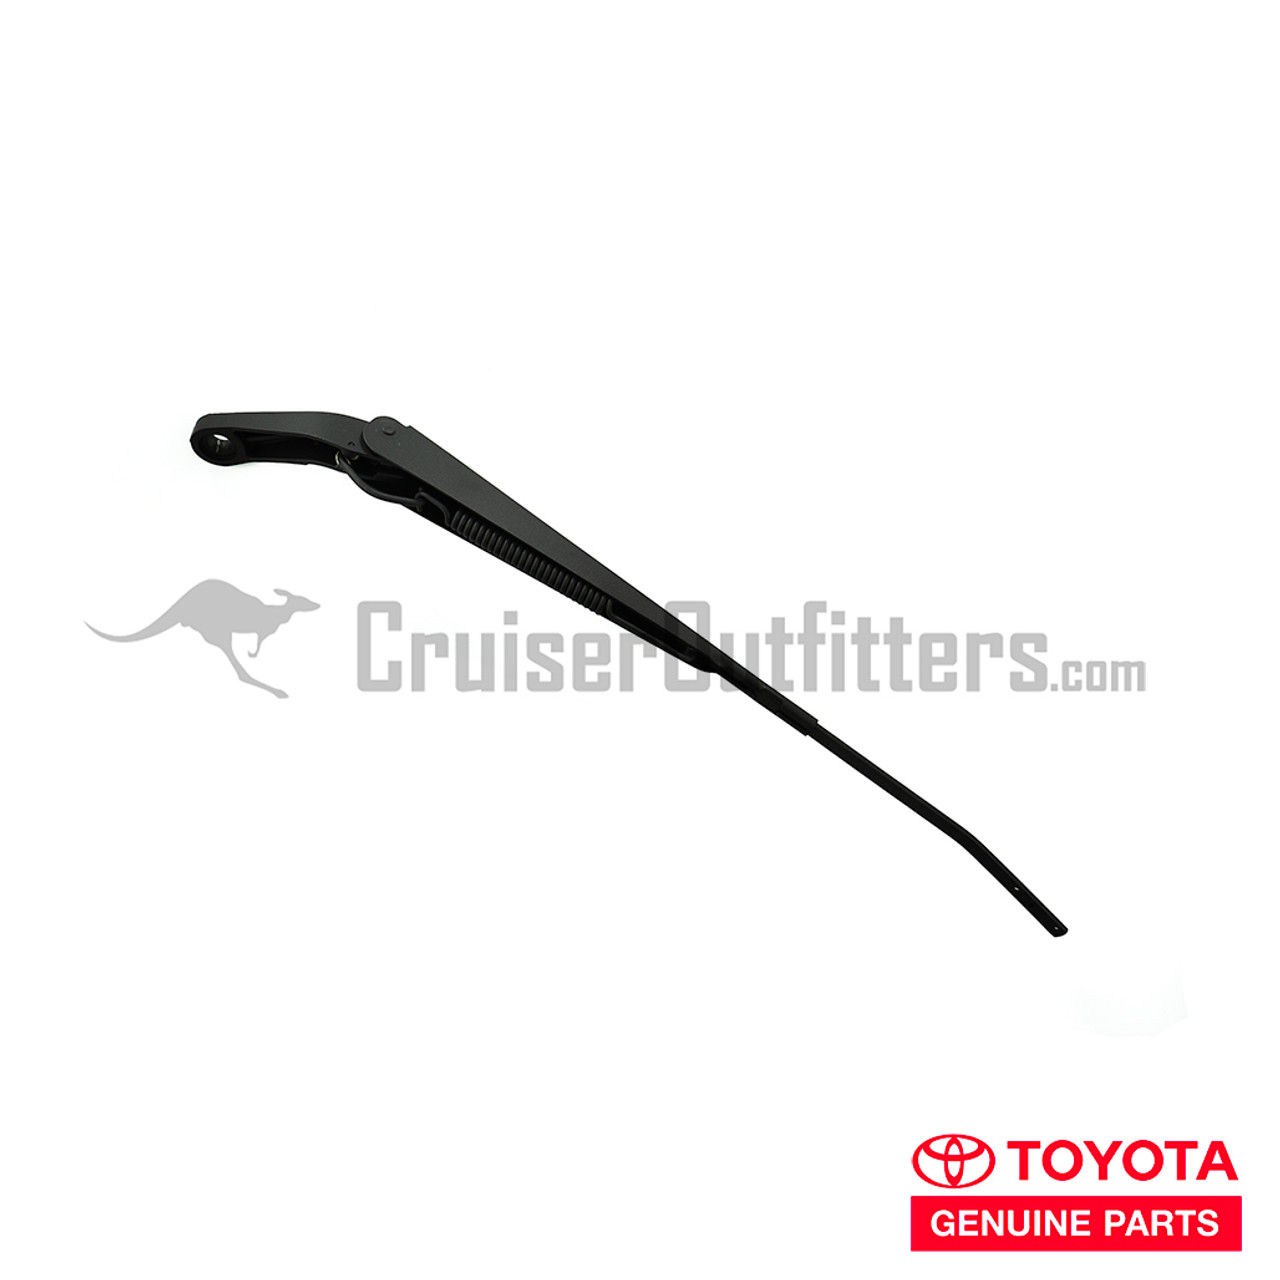 Windshield Wiper Arm - OEM Toyota - Fits 6x Series Right (WIPLHD6XR)